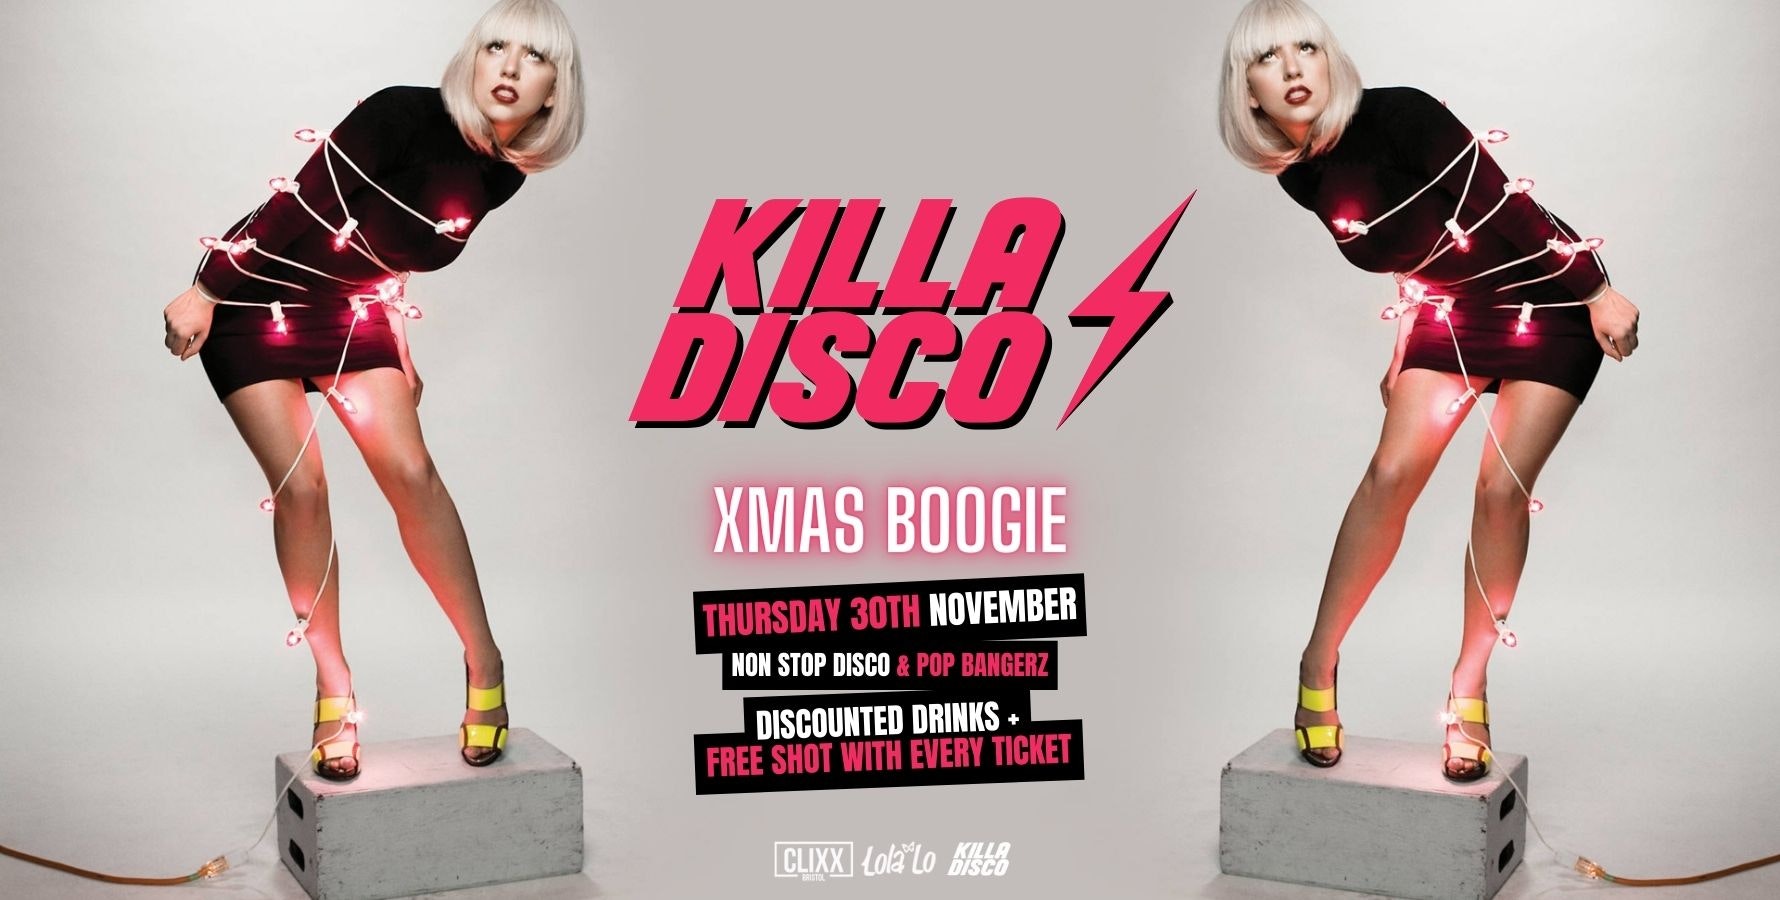 KILLA DISCO ⚡ XMAS Boogie – Killa Tunes + Killa Drinks / Free shot with every ticket 😋